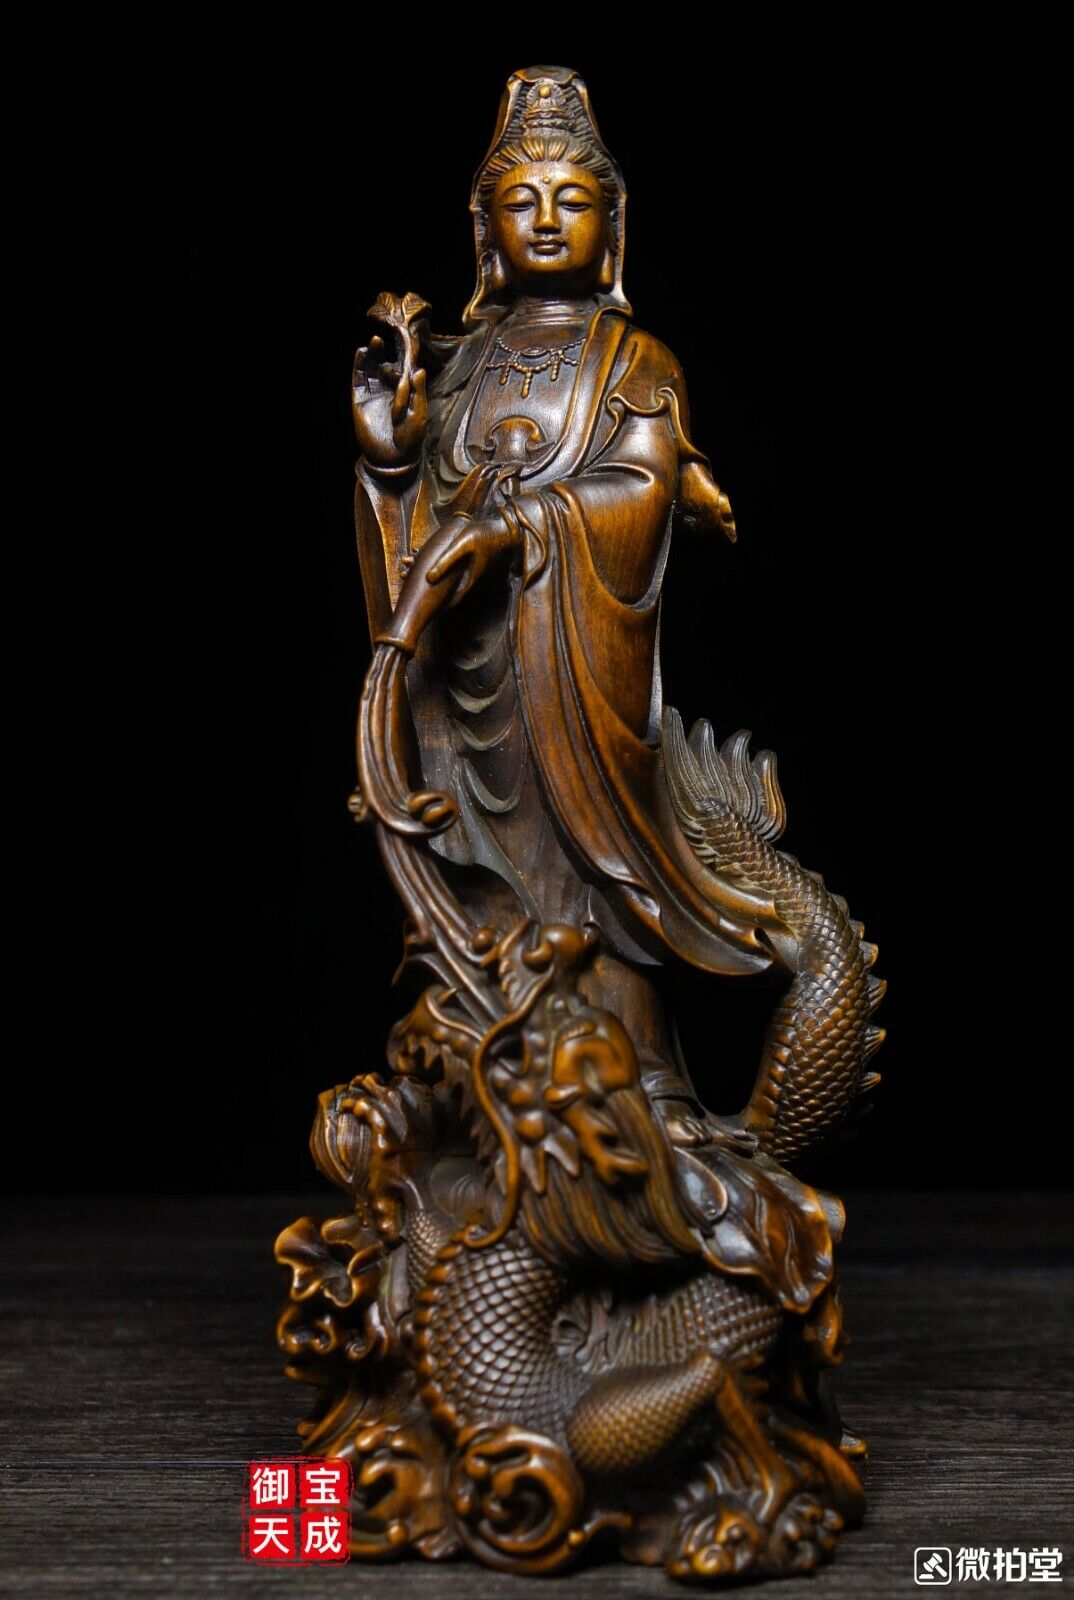 China Buddhism Boxwood wood Carving Dragon Kwan-yin Guan Yin Boddhisattva Statue